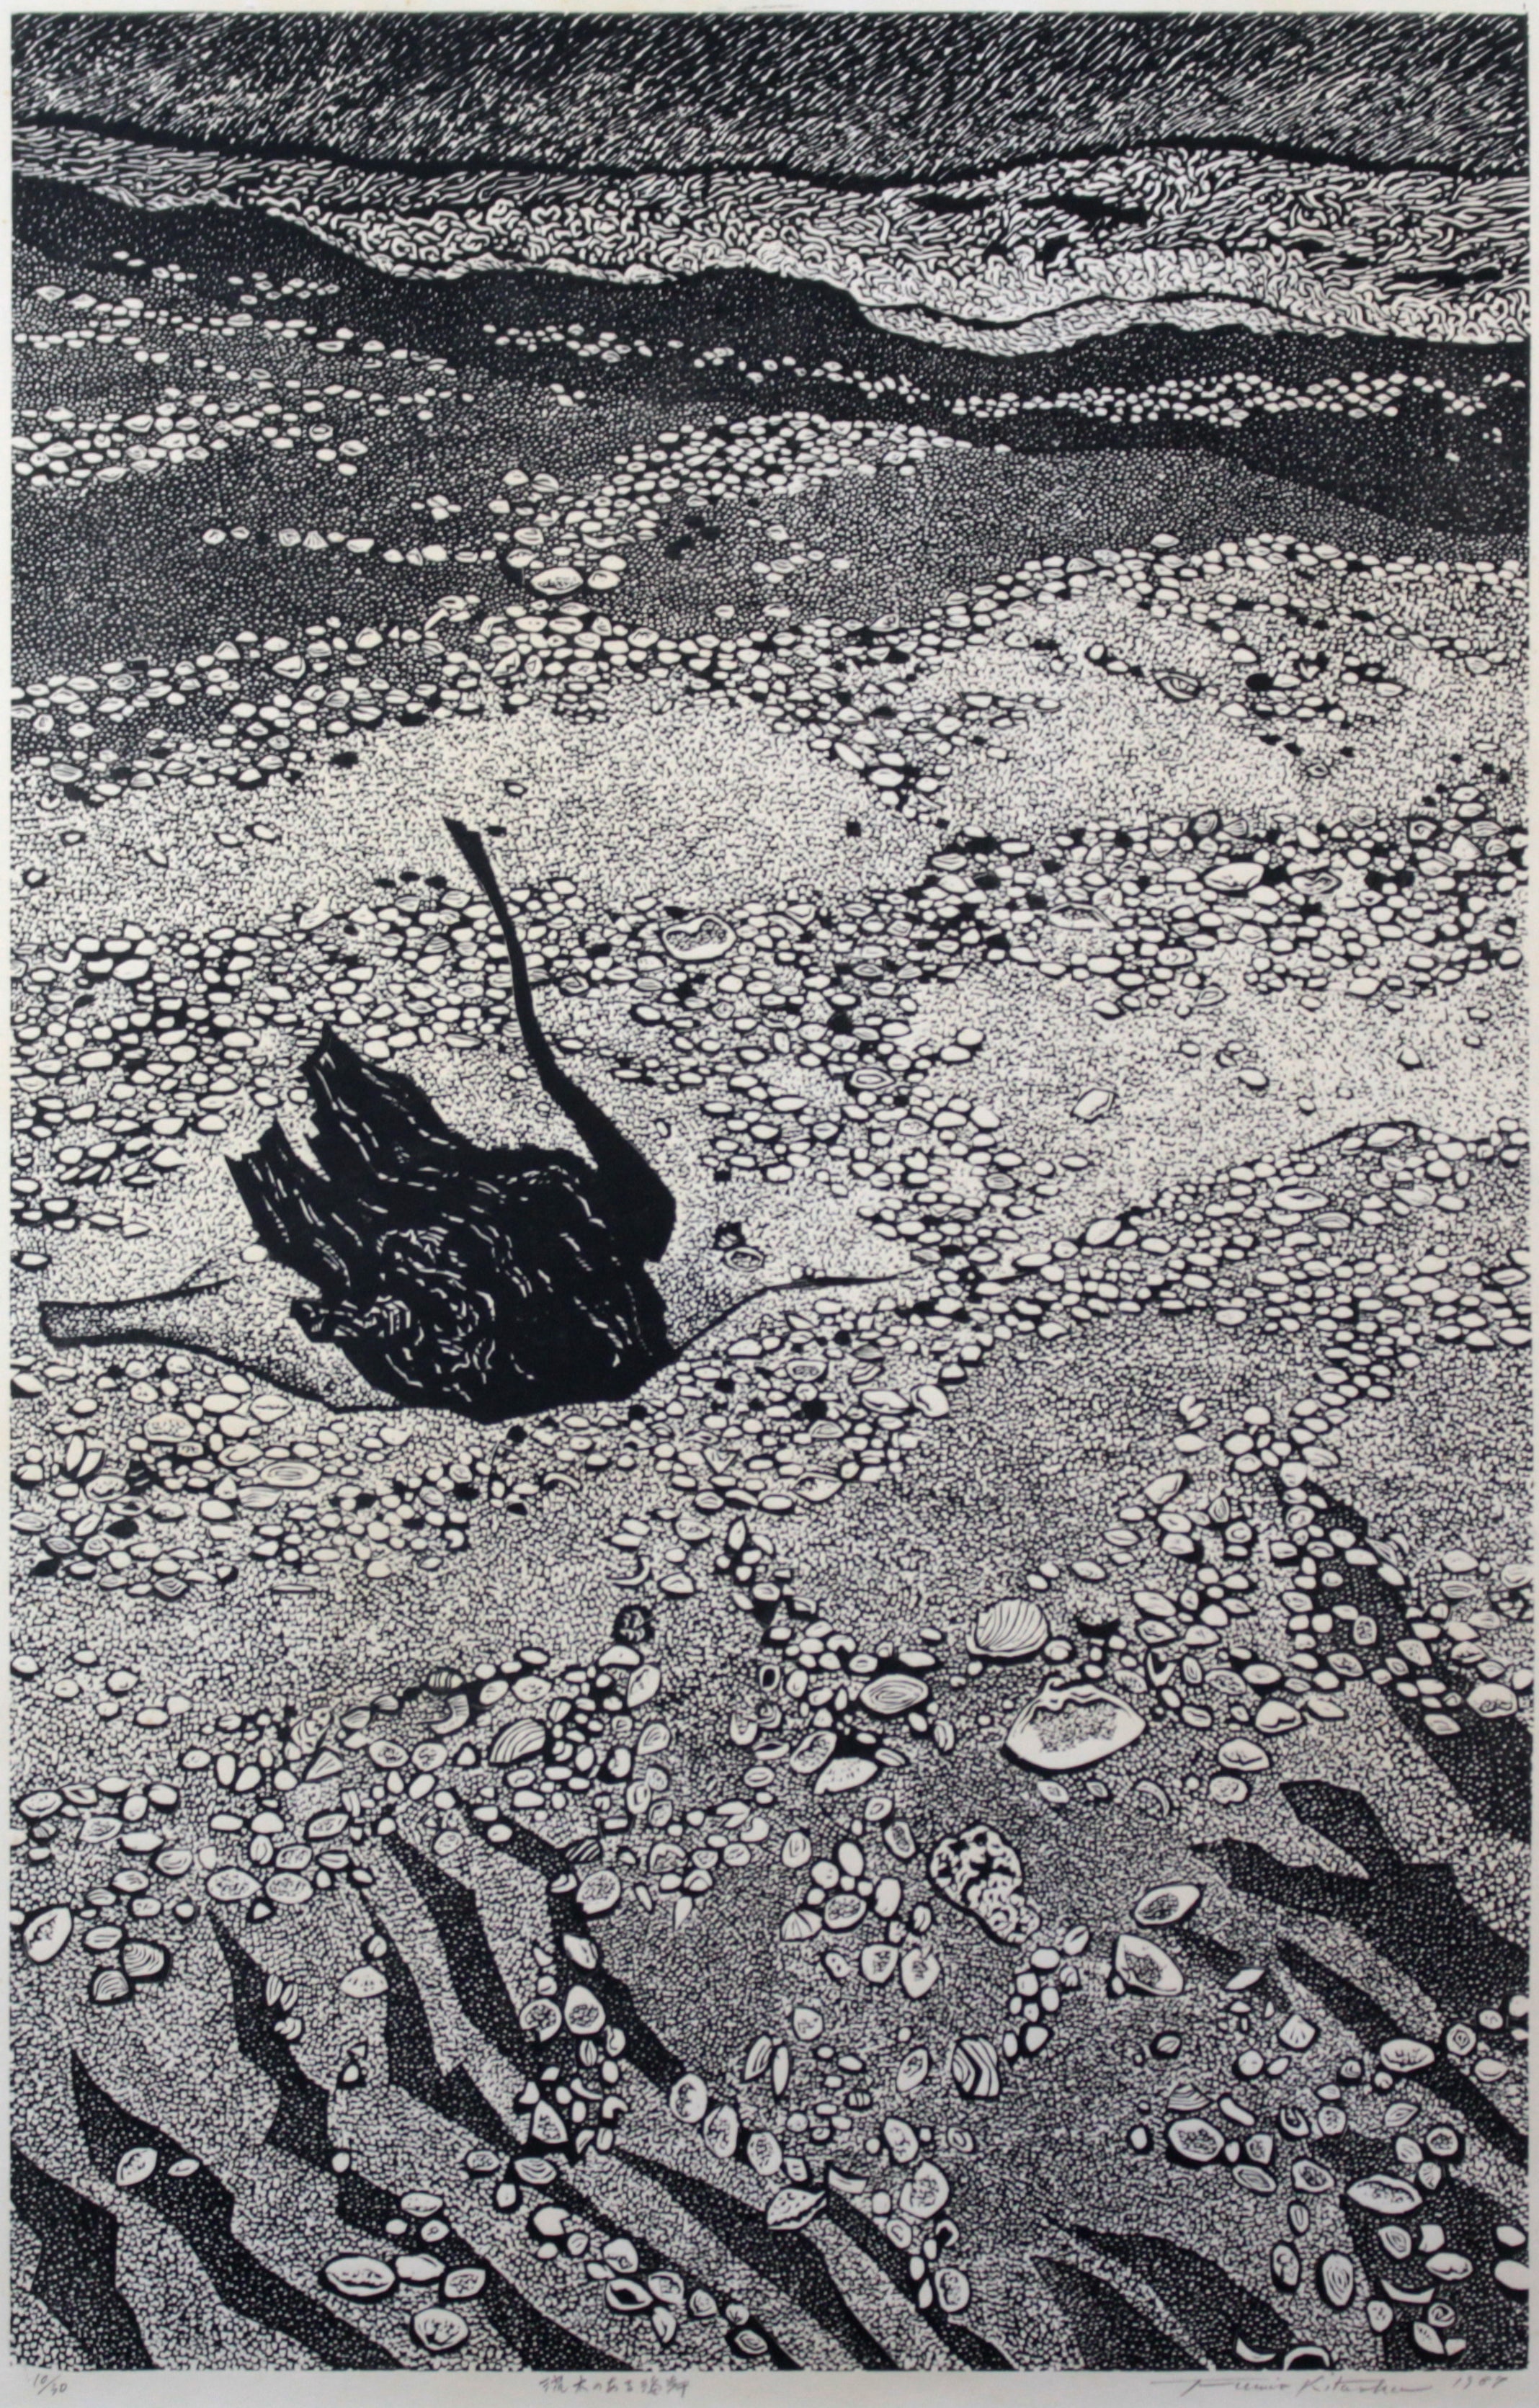 北岡文雄 『流木のある海岸』 木版画 - 北海道画廊